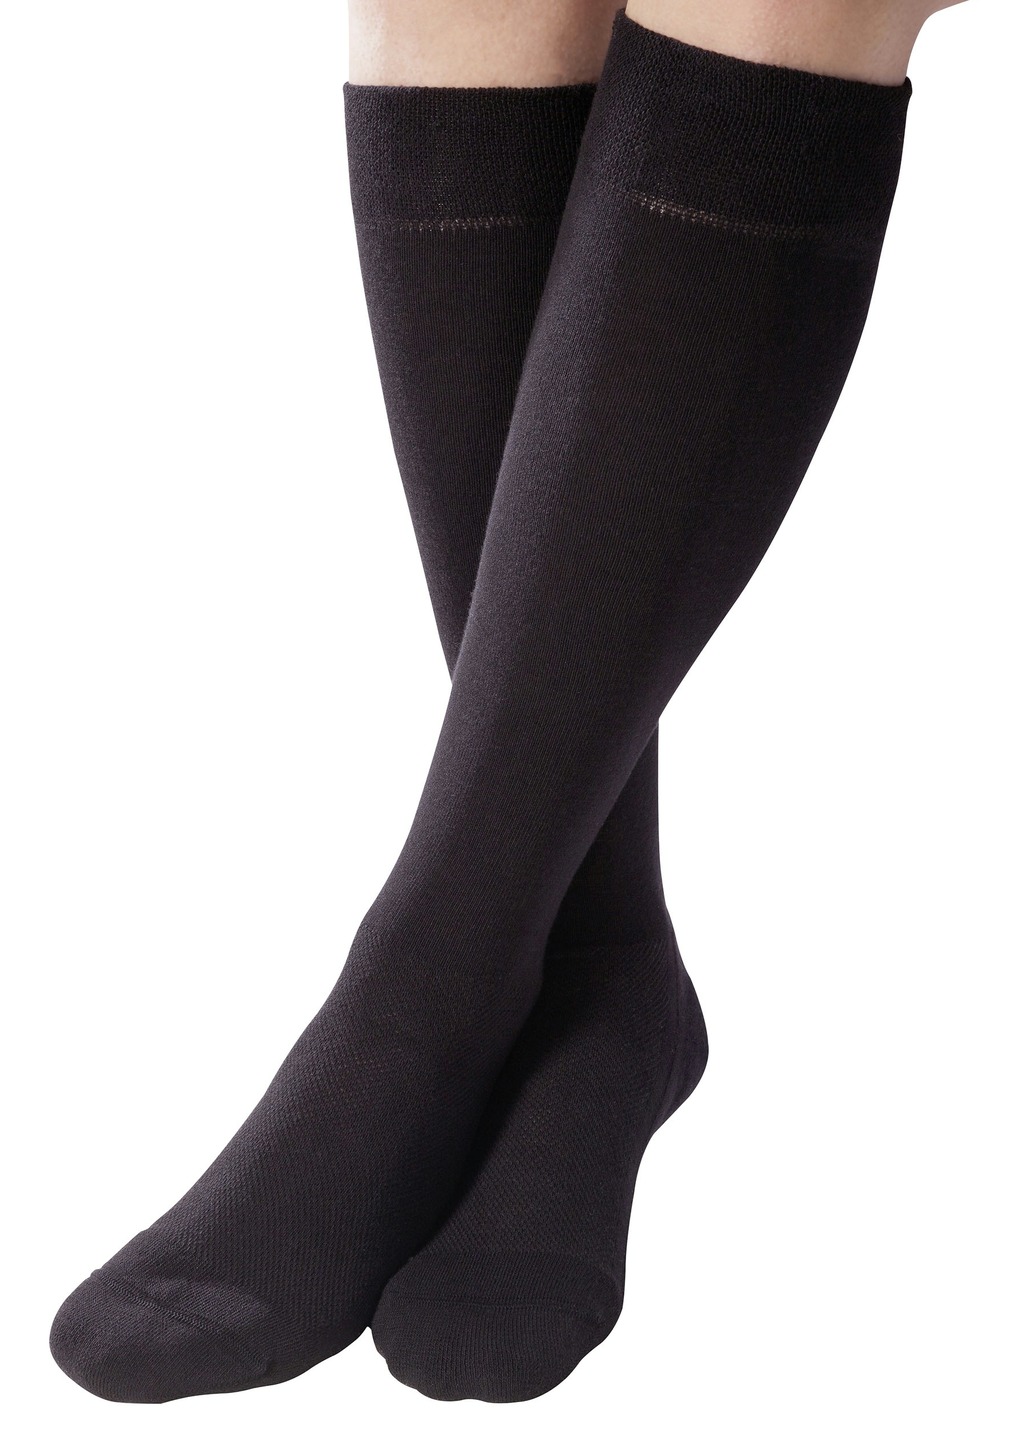 Strümpfe - Zweierpack Komfort-Kniestrümpfe oder -Socken , in Größe 001 bis 003, in Farbe SCHWARZ, in Ausführung Zweierpack Komfort-Socken Ansicht 1